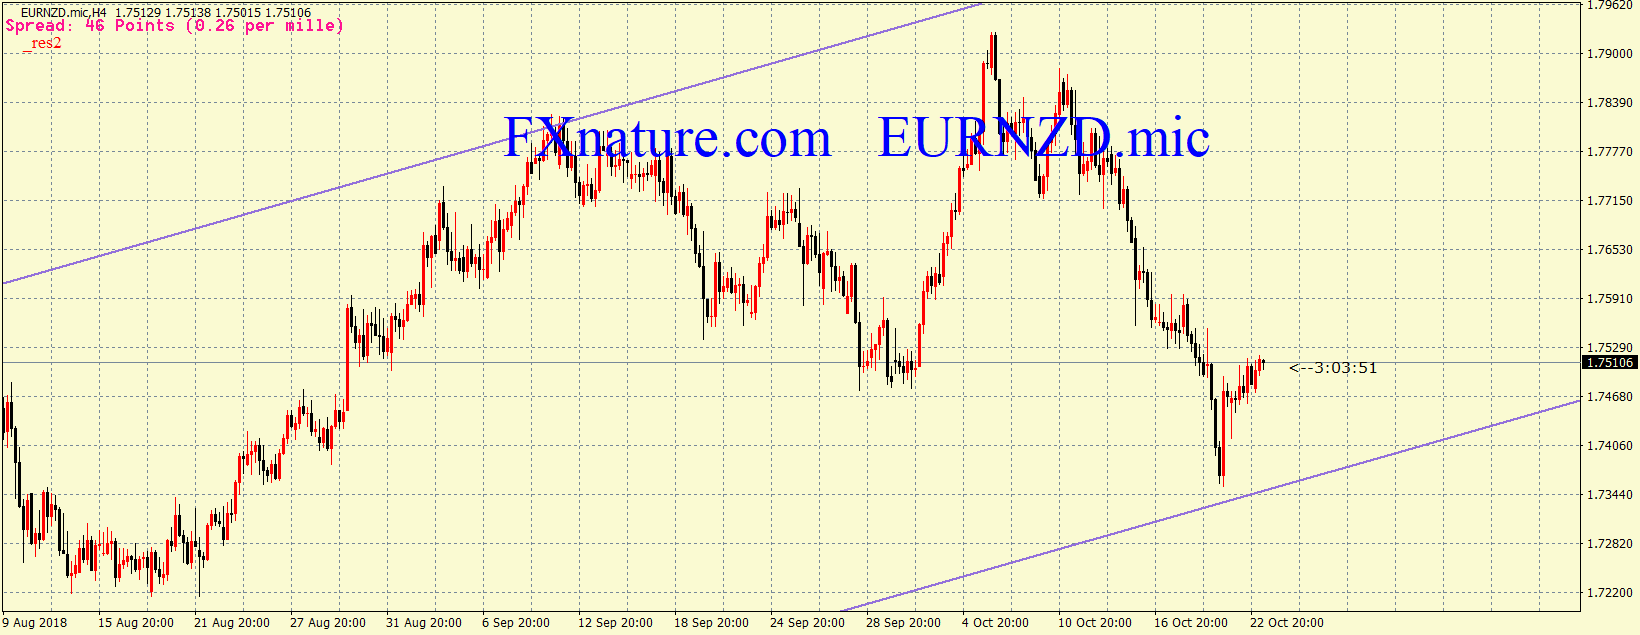  یورو دلار نیوزلند